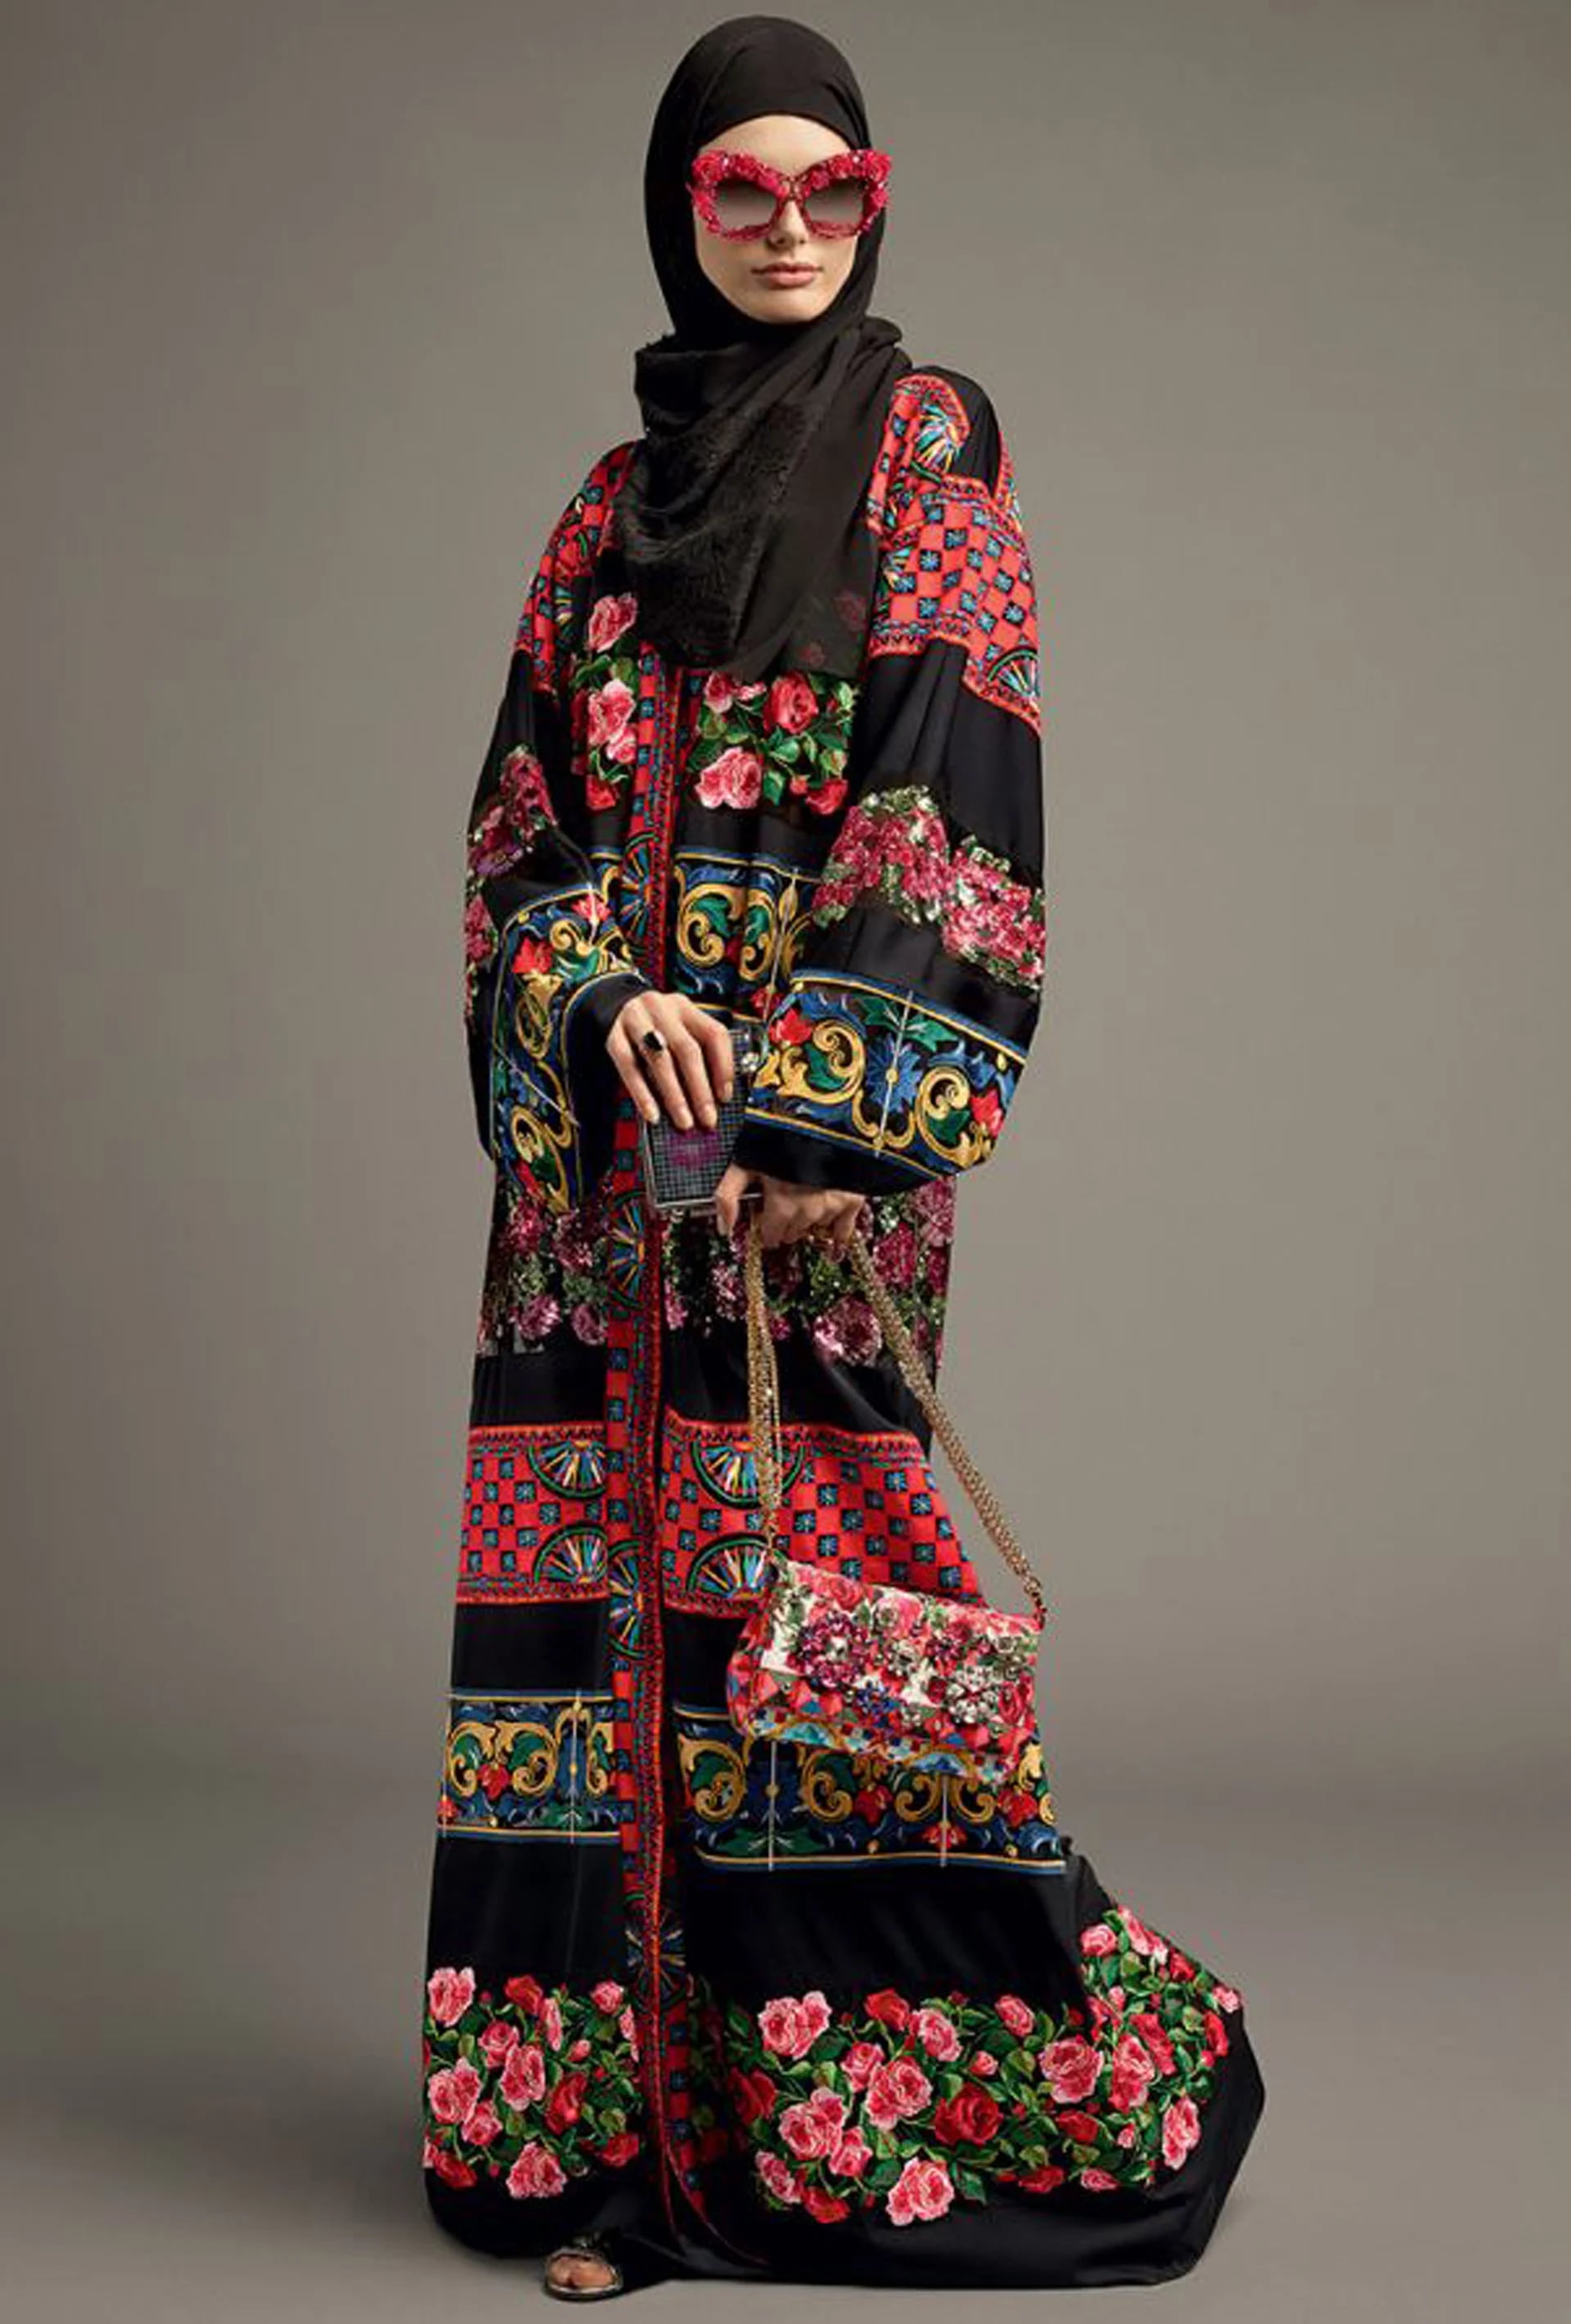 Mix de estampado de flores, barroco y óptico con hijab en encaje y los anteojos XL con apliques de flores fucsias (Vogue Arabia)